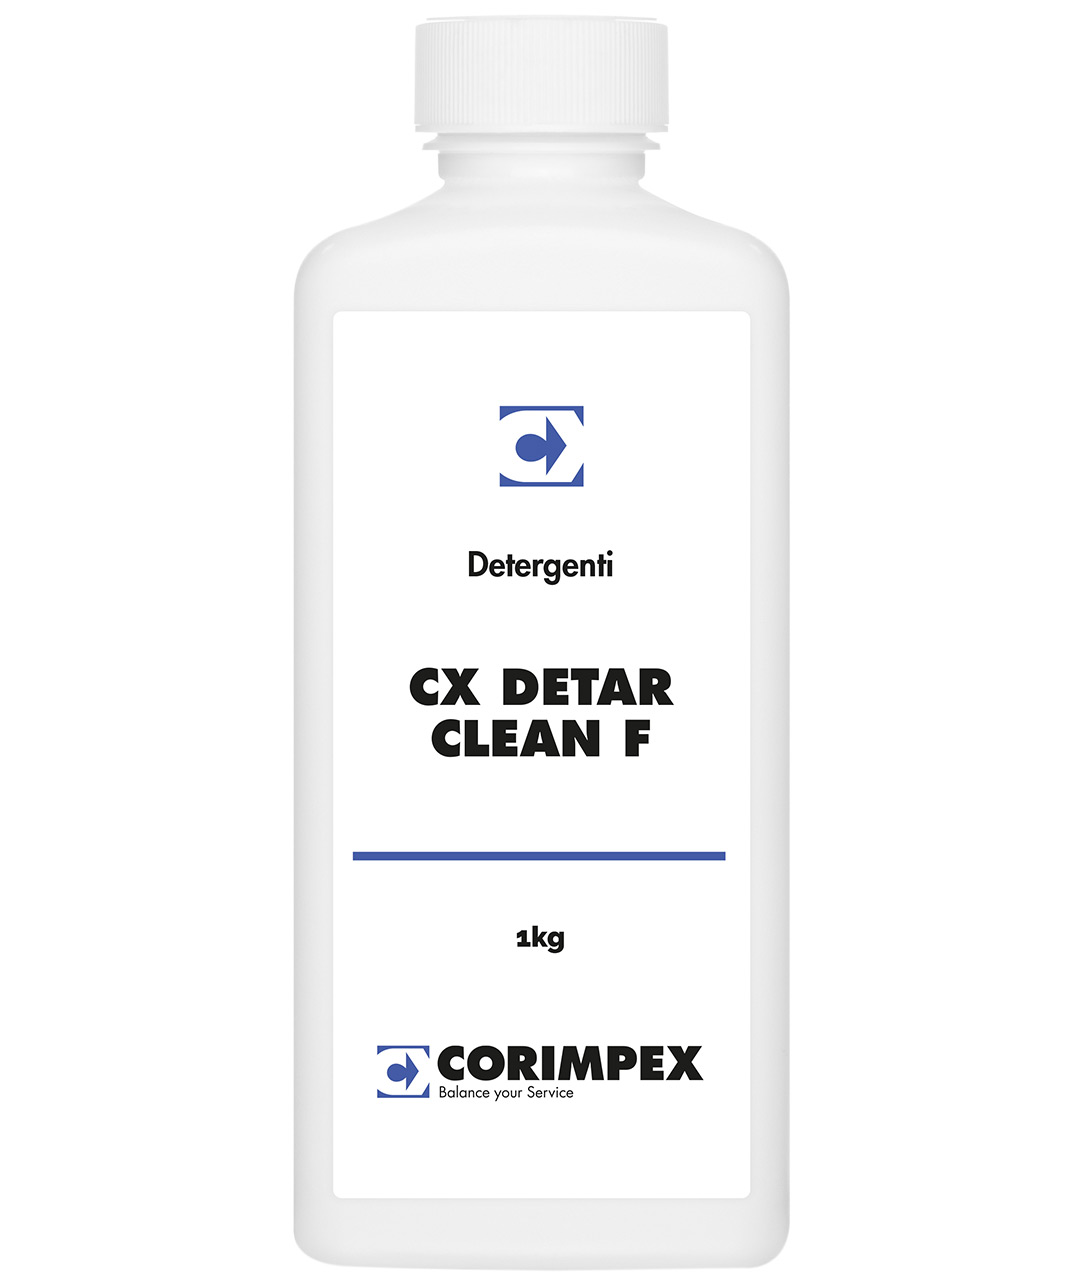 CX DETAR CLEAN F 